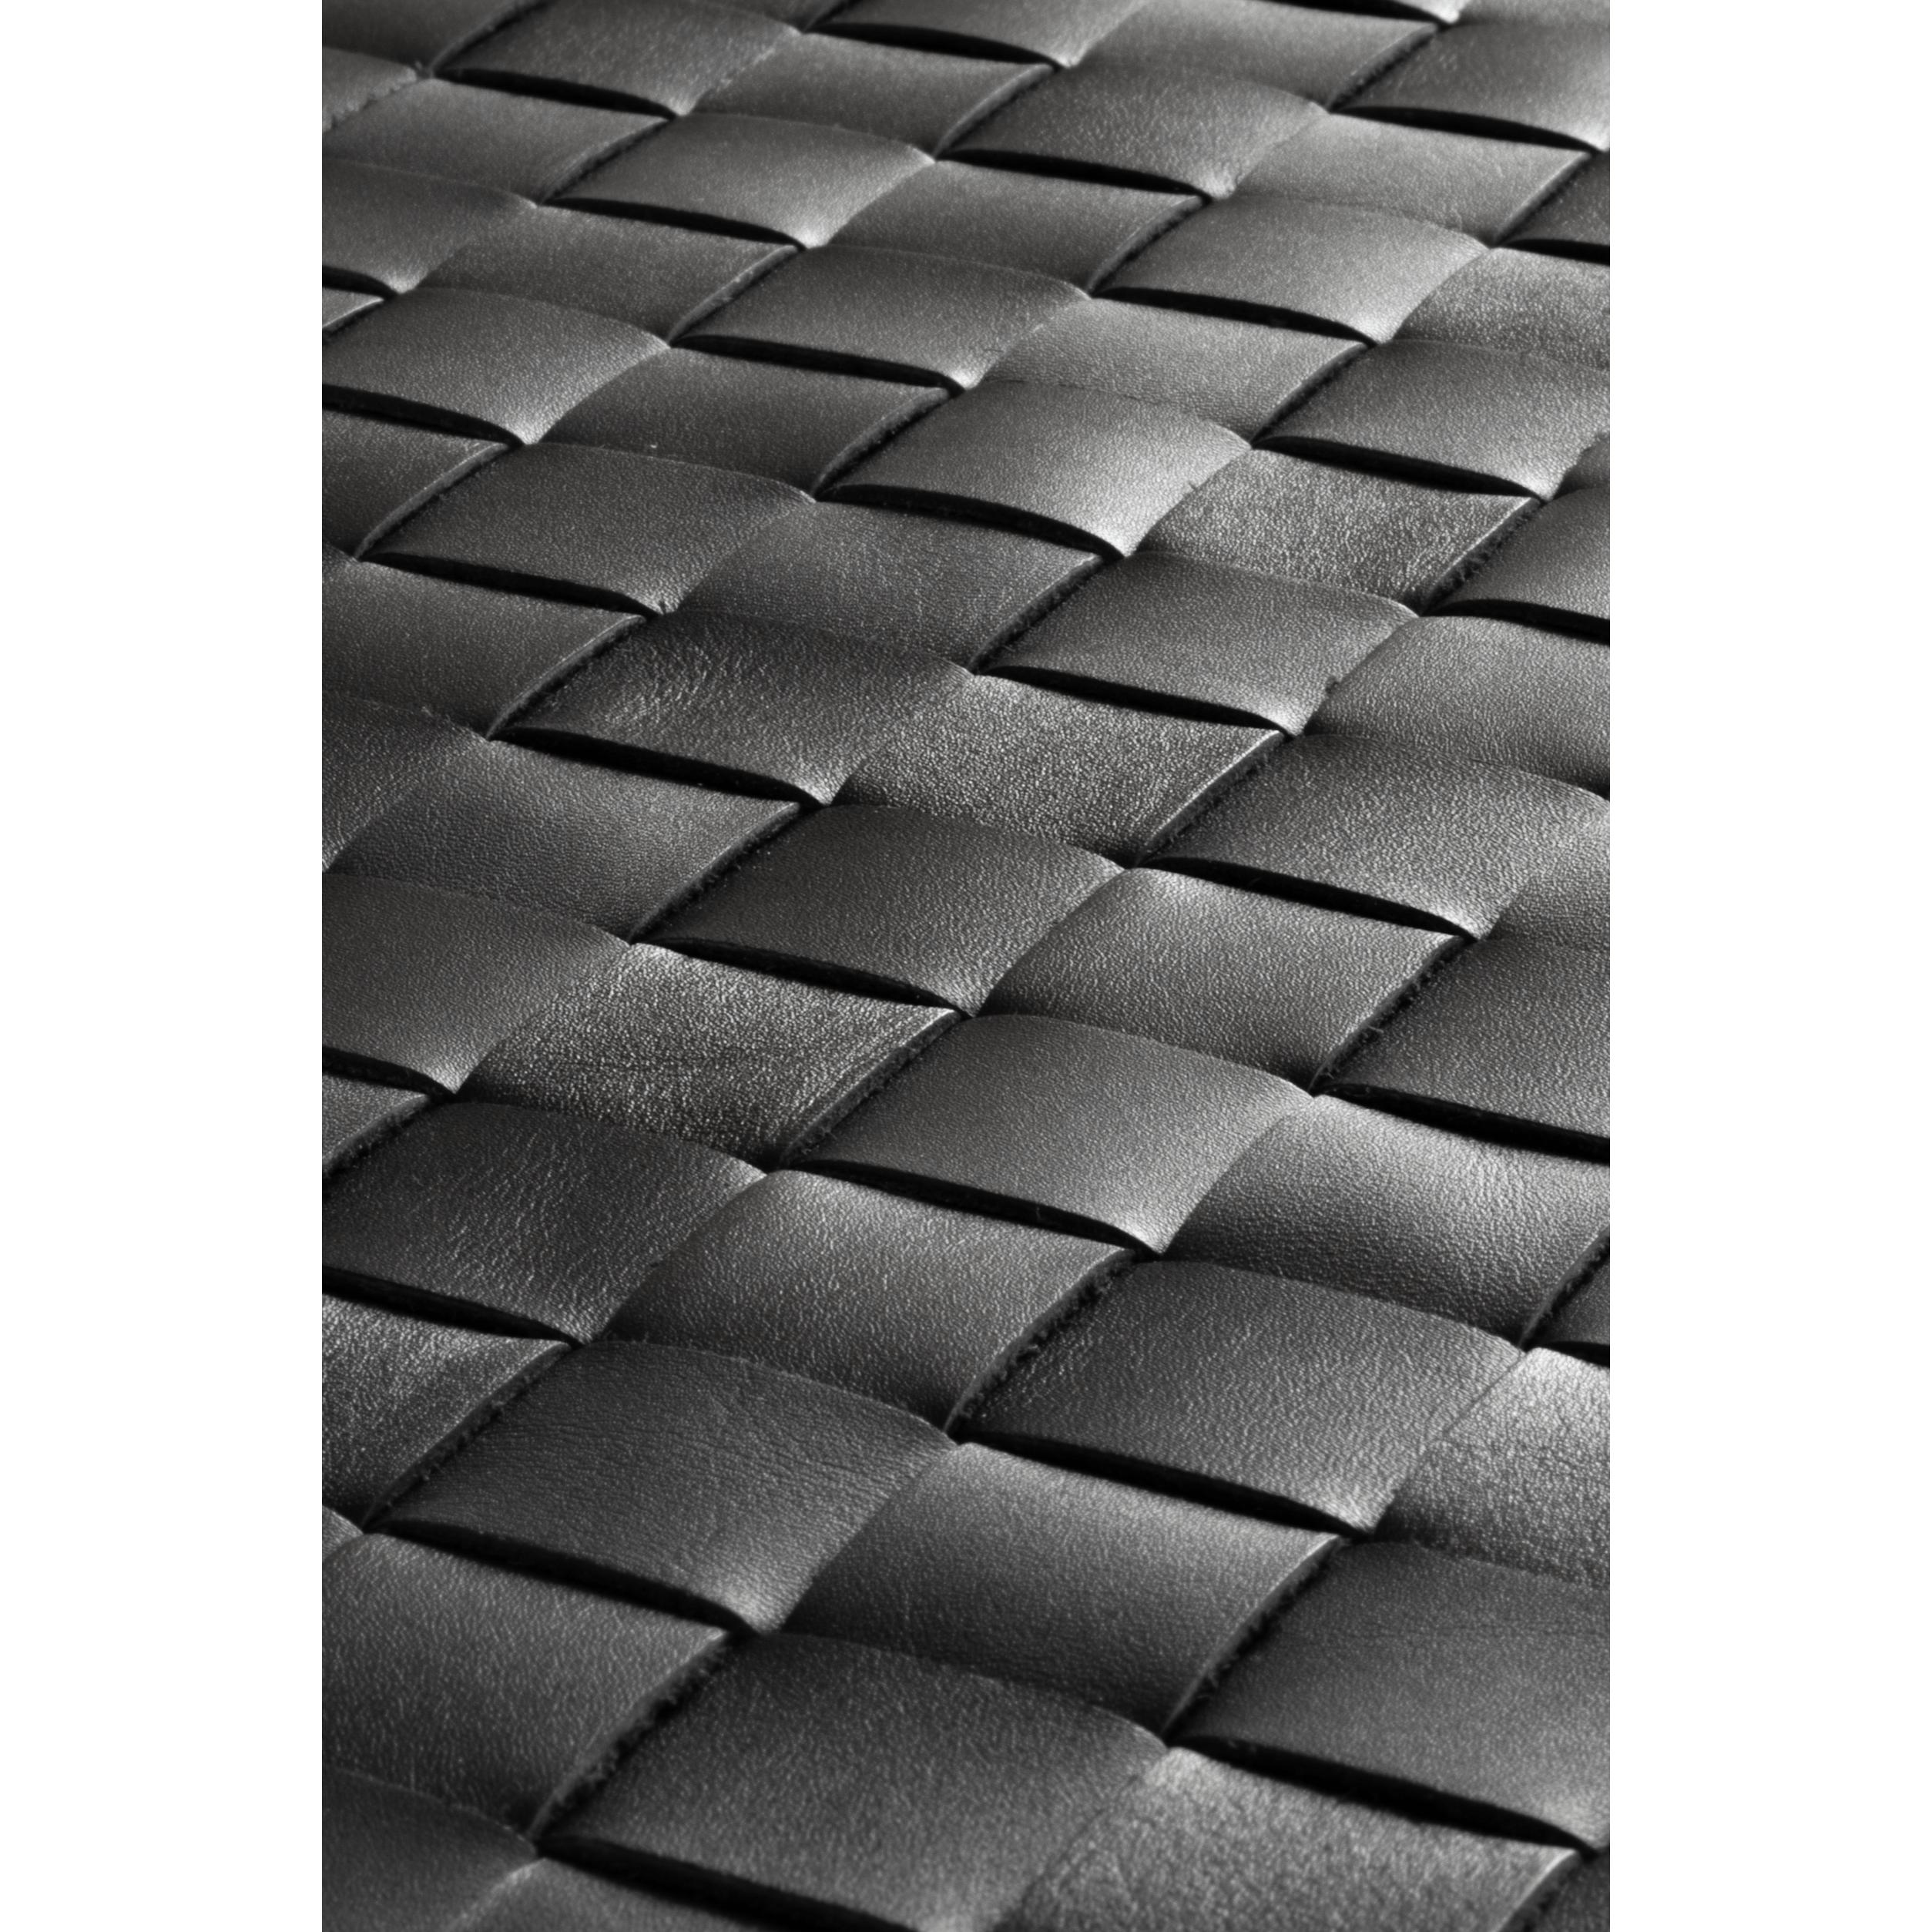 Rug Solid Tuscany Teppich Black, 65 x 135 cm-Teppiche-Rug Solid-5711655115012-11501-RUG-inwohn